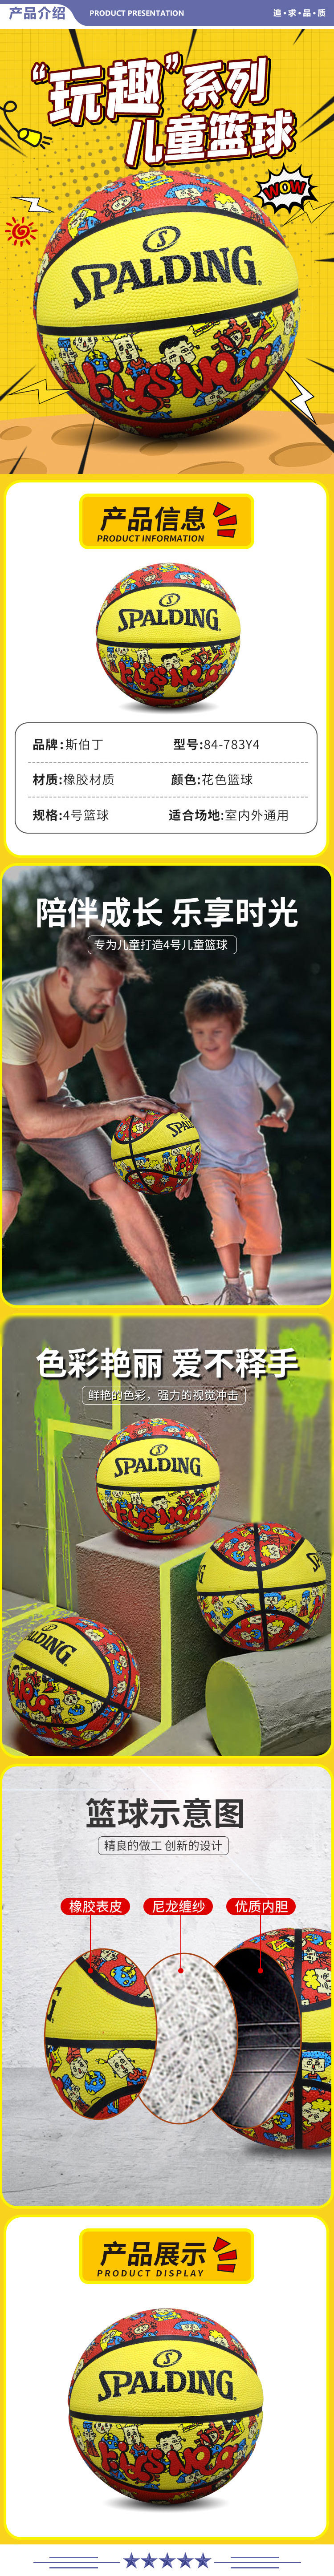 斯伯丁 84-783Y4 幼儿园4号儿童学生篮球玩趣系列橡胶耐用室外表皮皮球花色 2.jpg